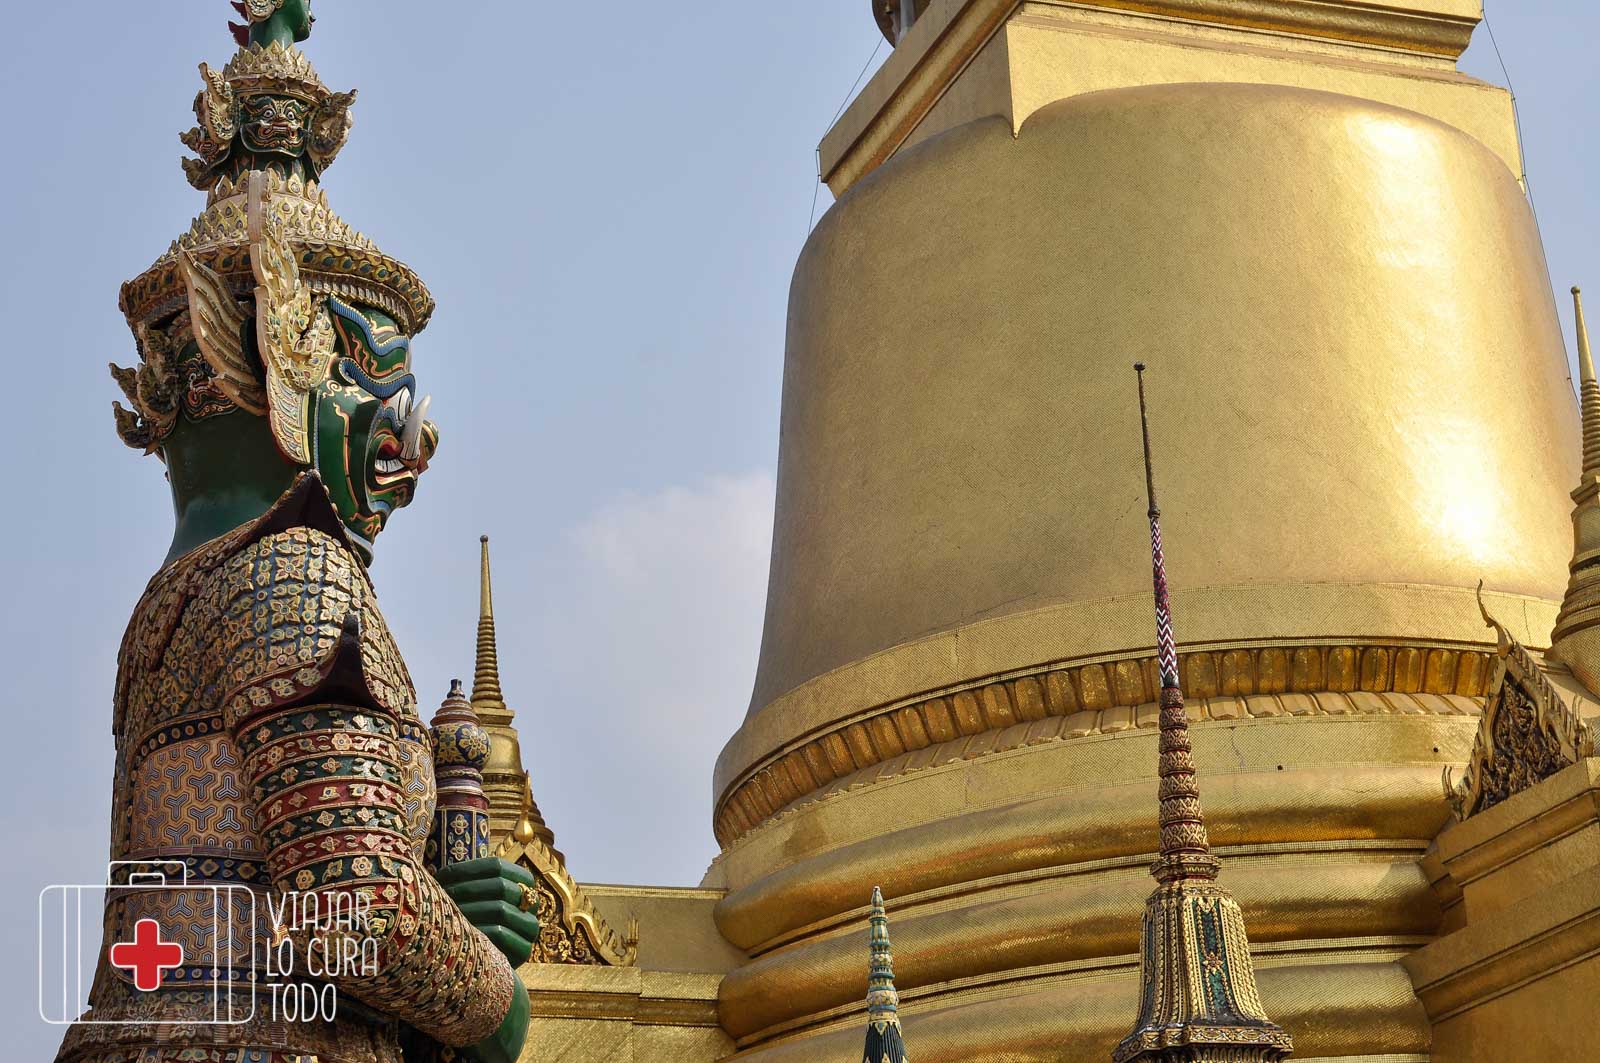 palacio real bangkok